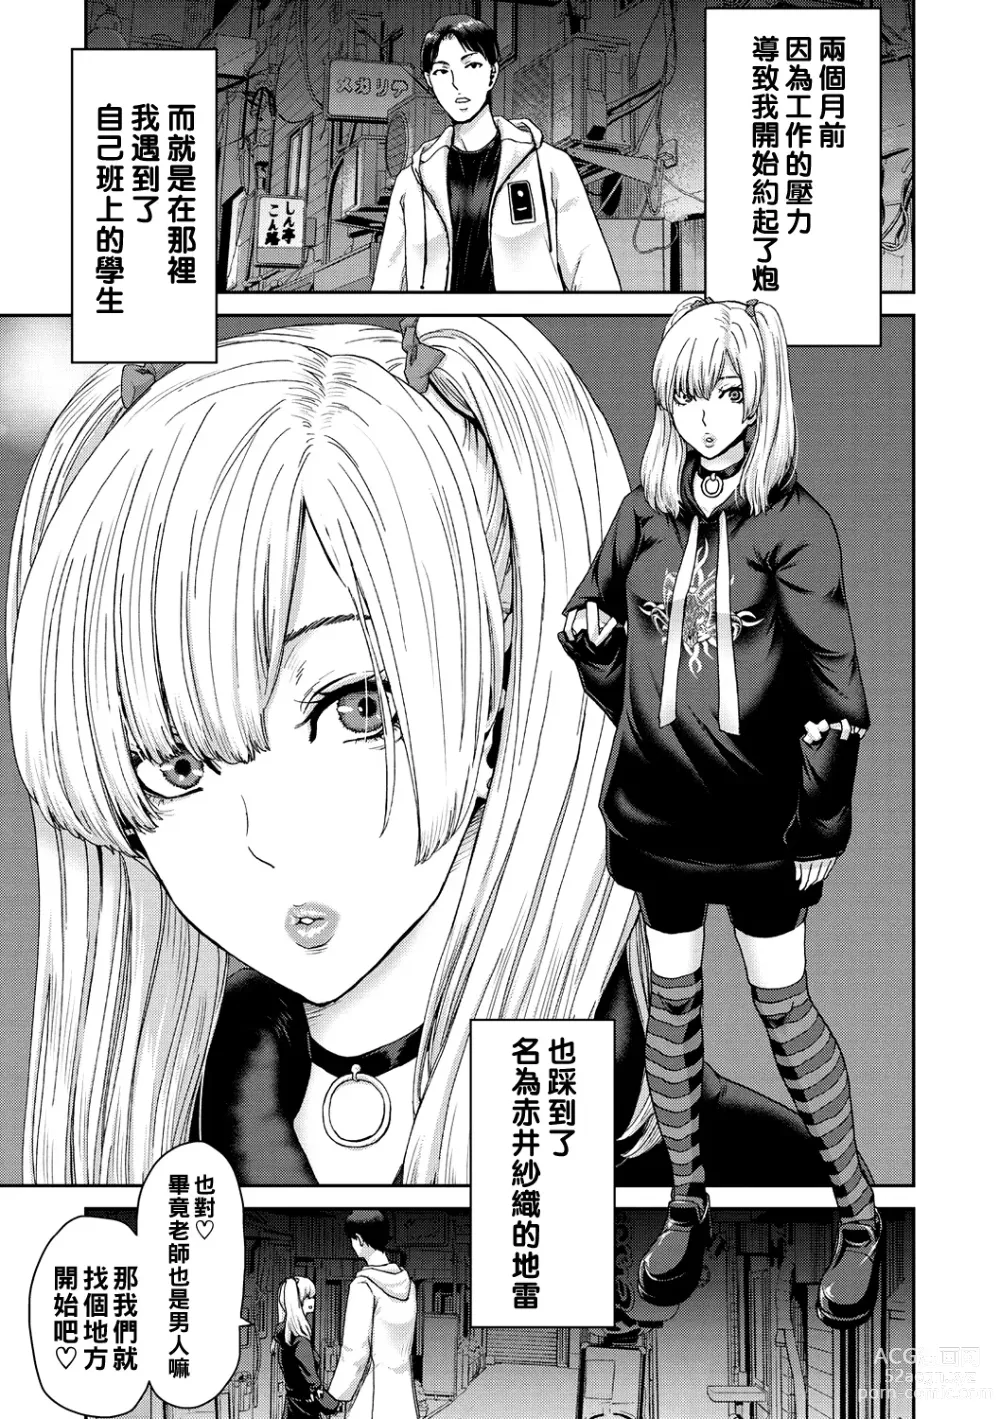 Page 5 of manga Shiyokka Hametsu SEX